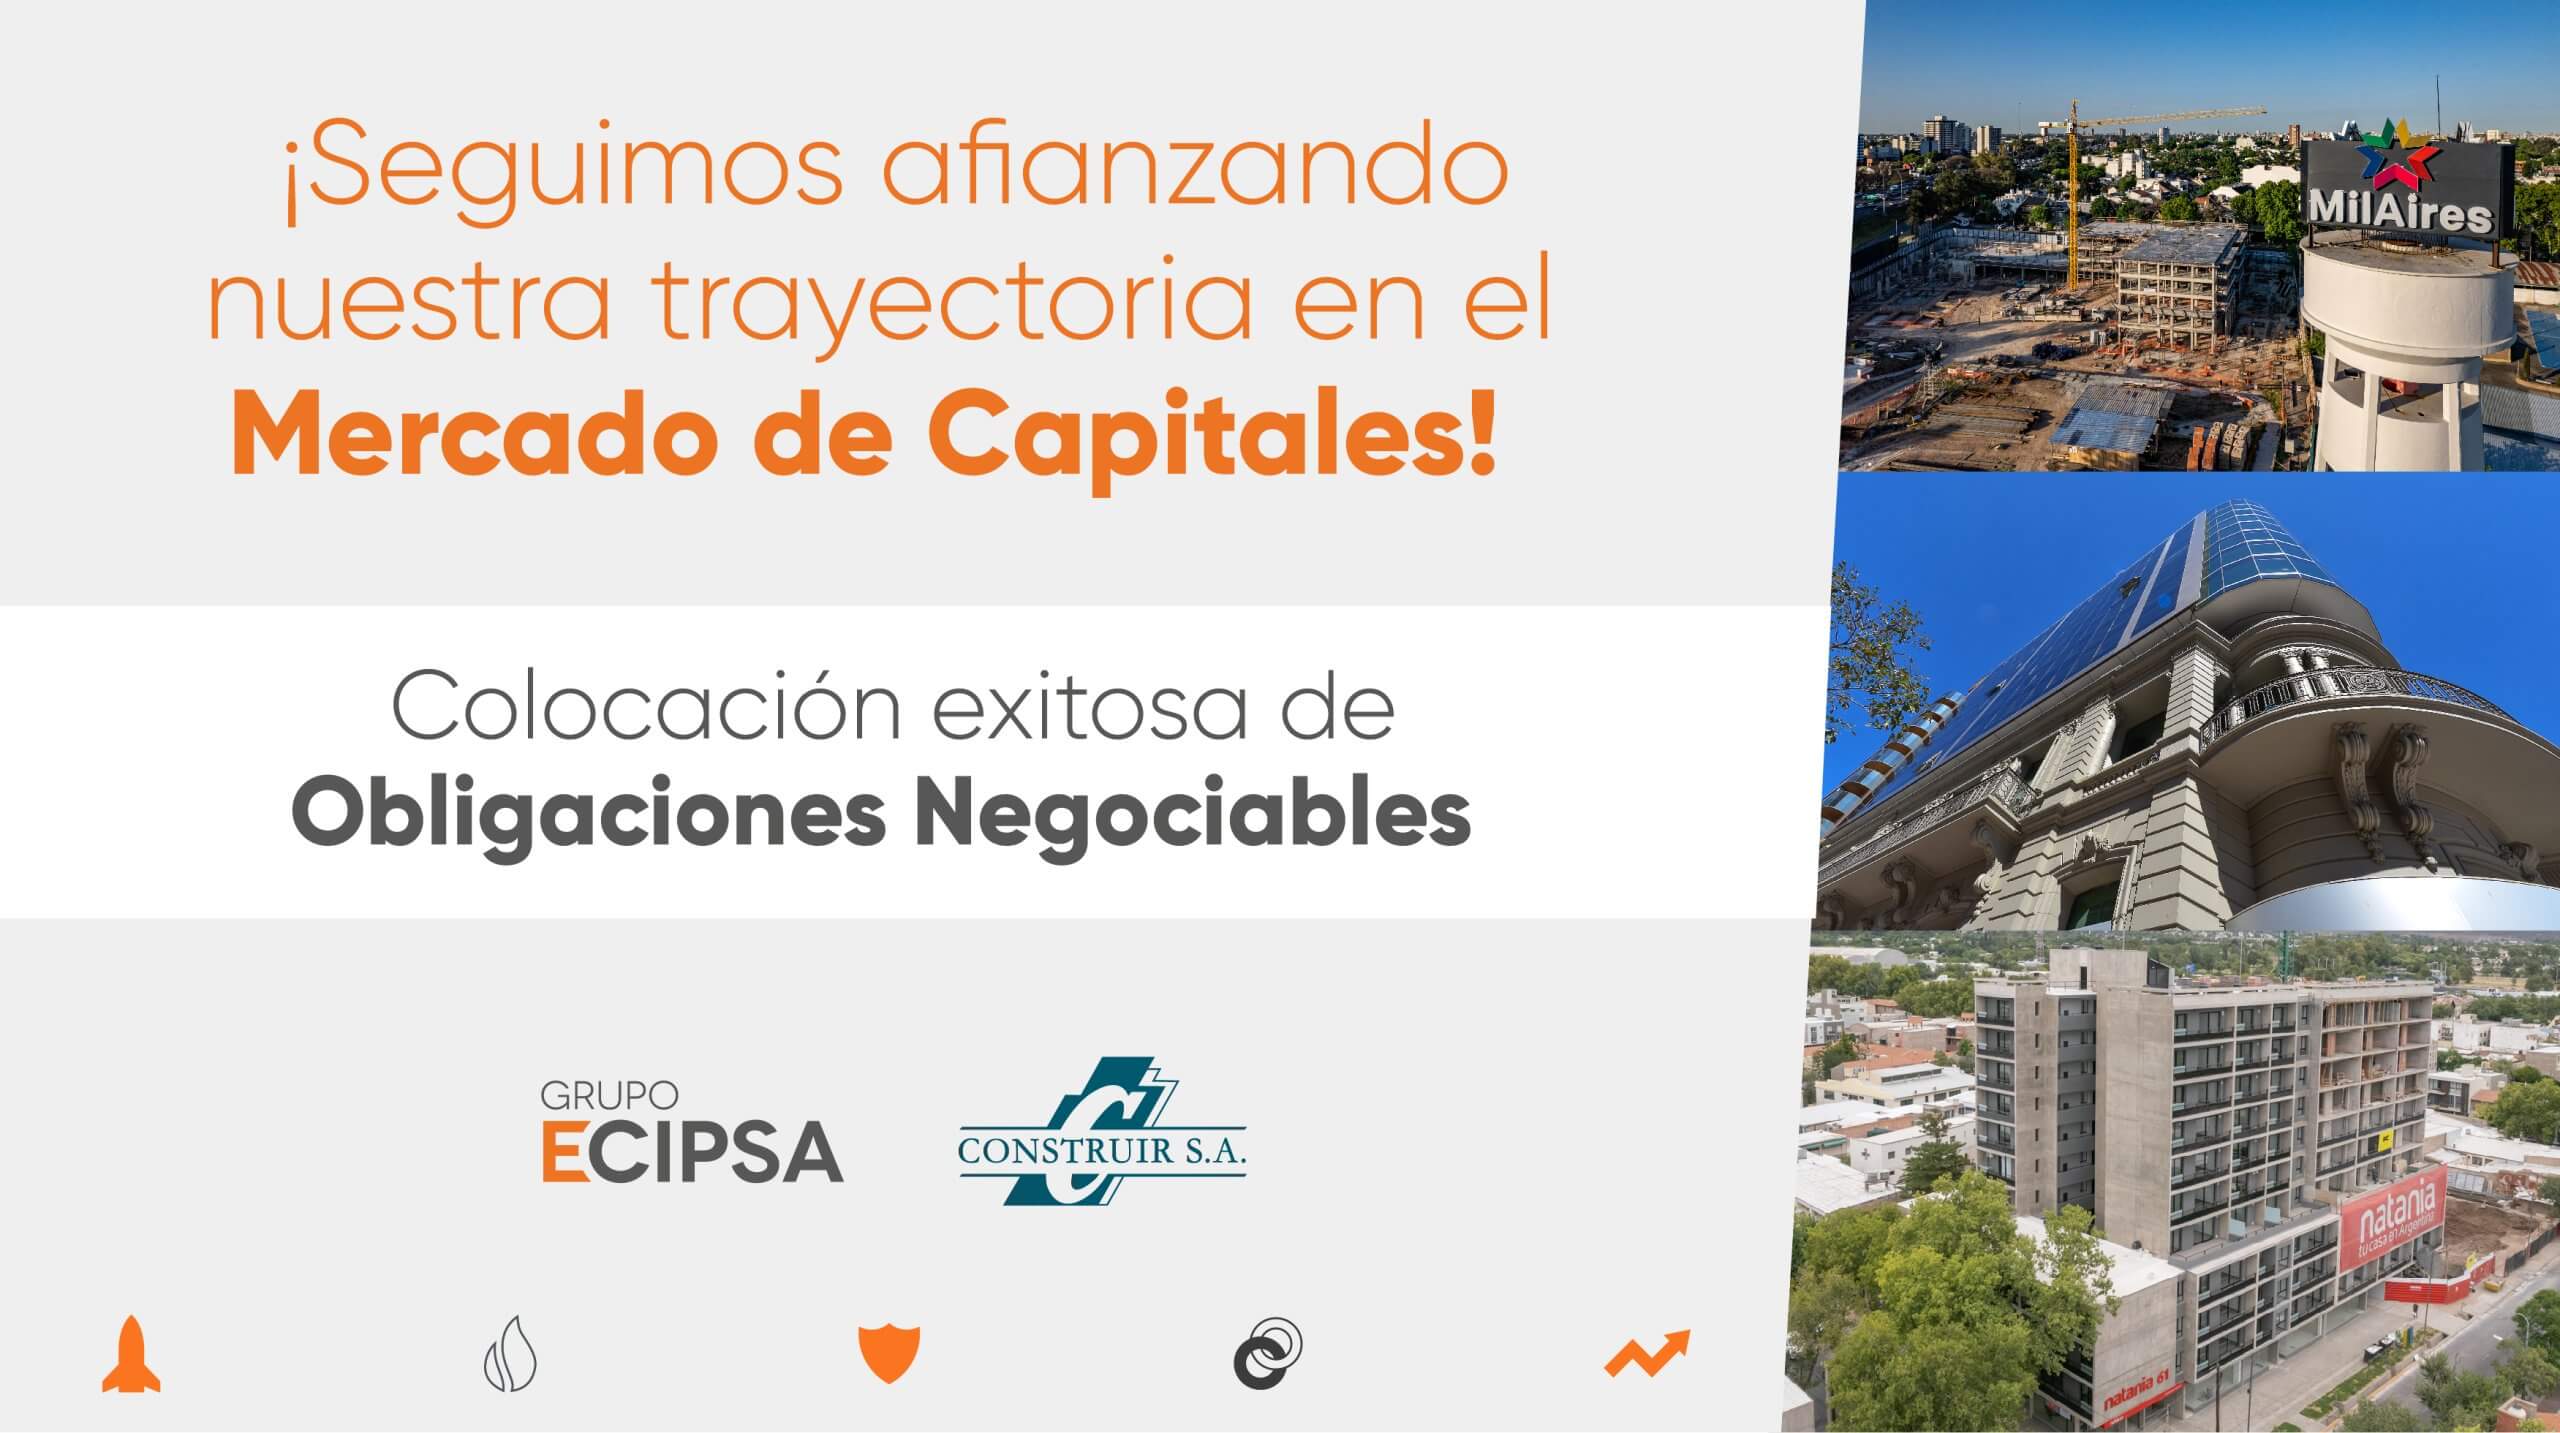 Grupo Ecipsa afianza su trayectoria en el Mercado de Capitales